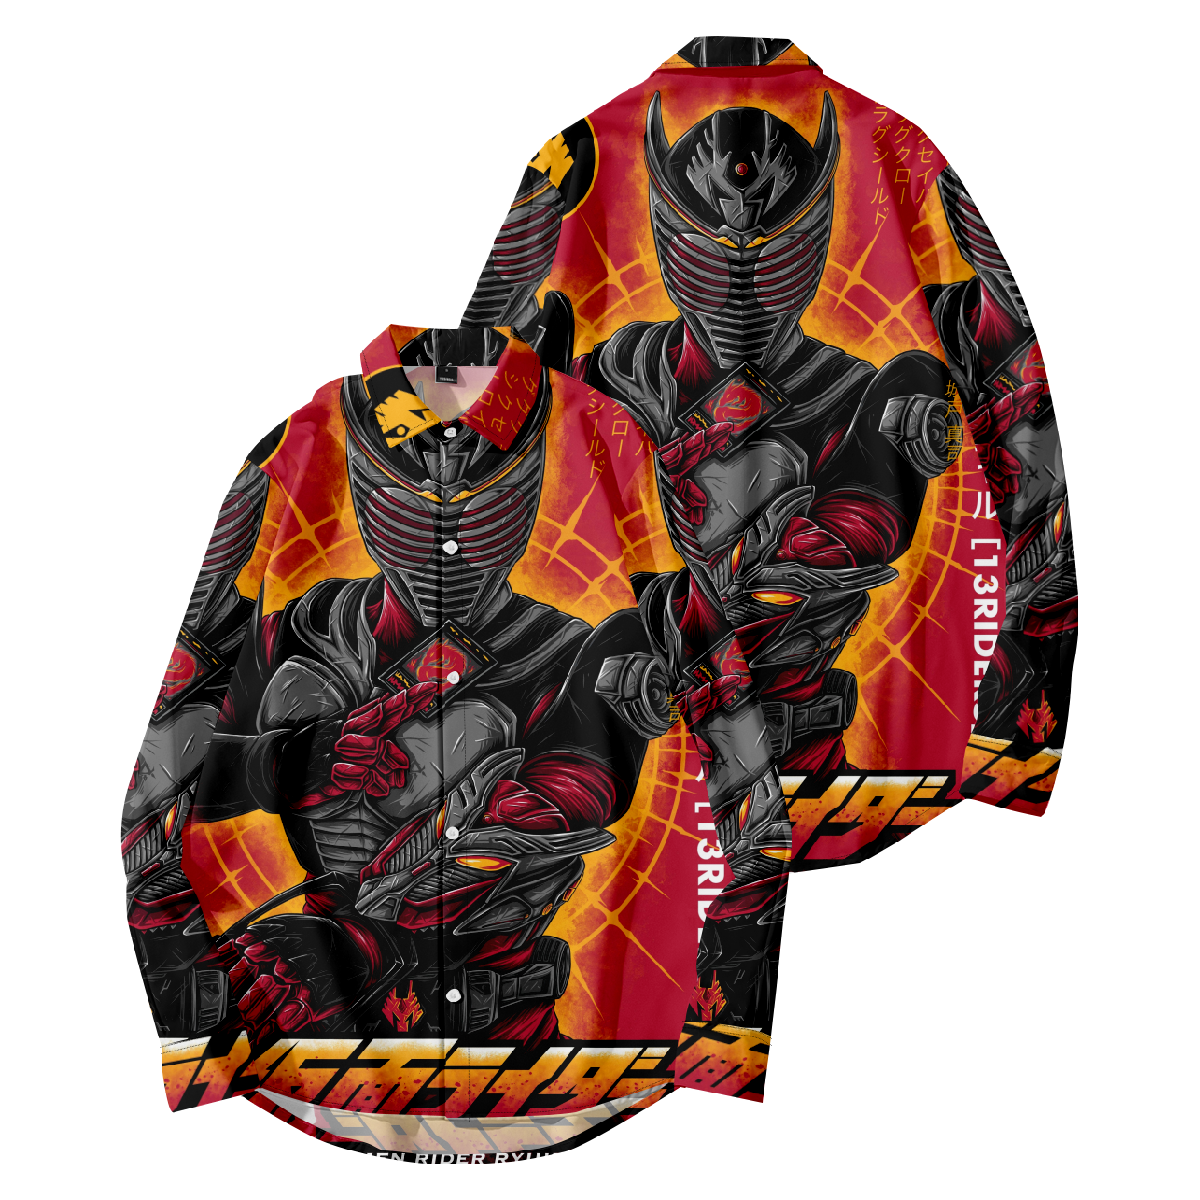 Kamen Rider Button Up Shirt Long Sleeve Shirt for Men Regular Fit Ideal Gift